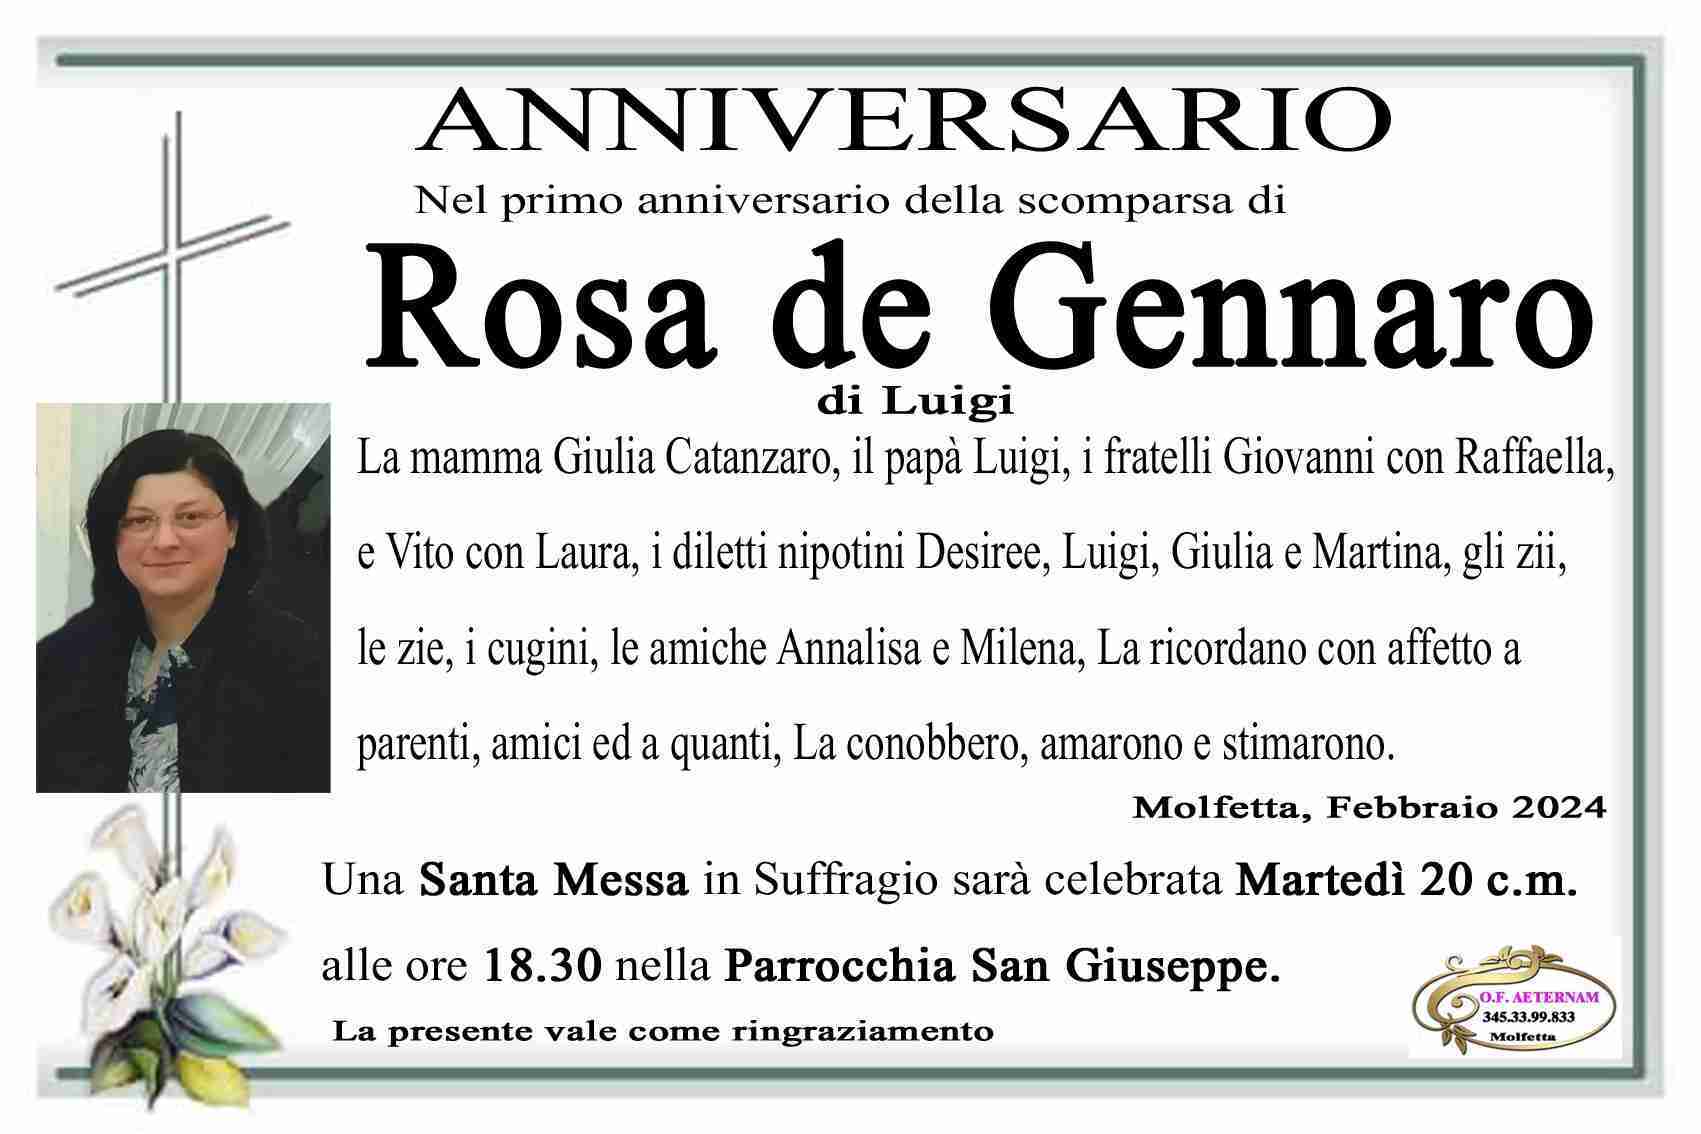 Rosa de Gennaro